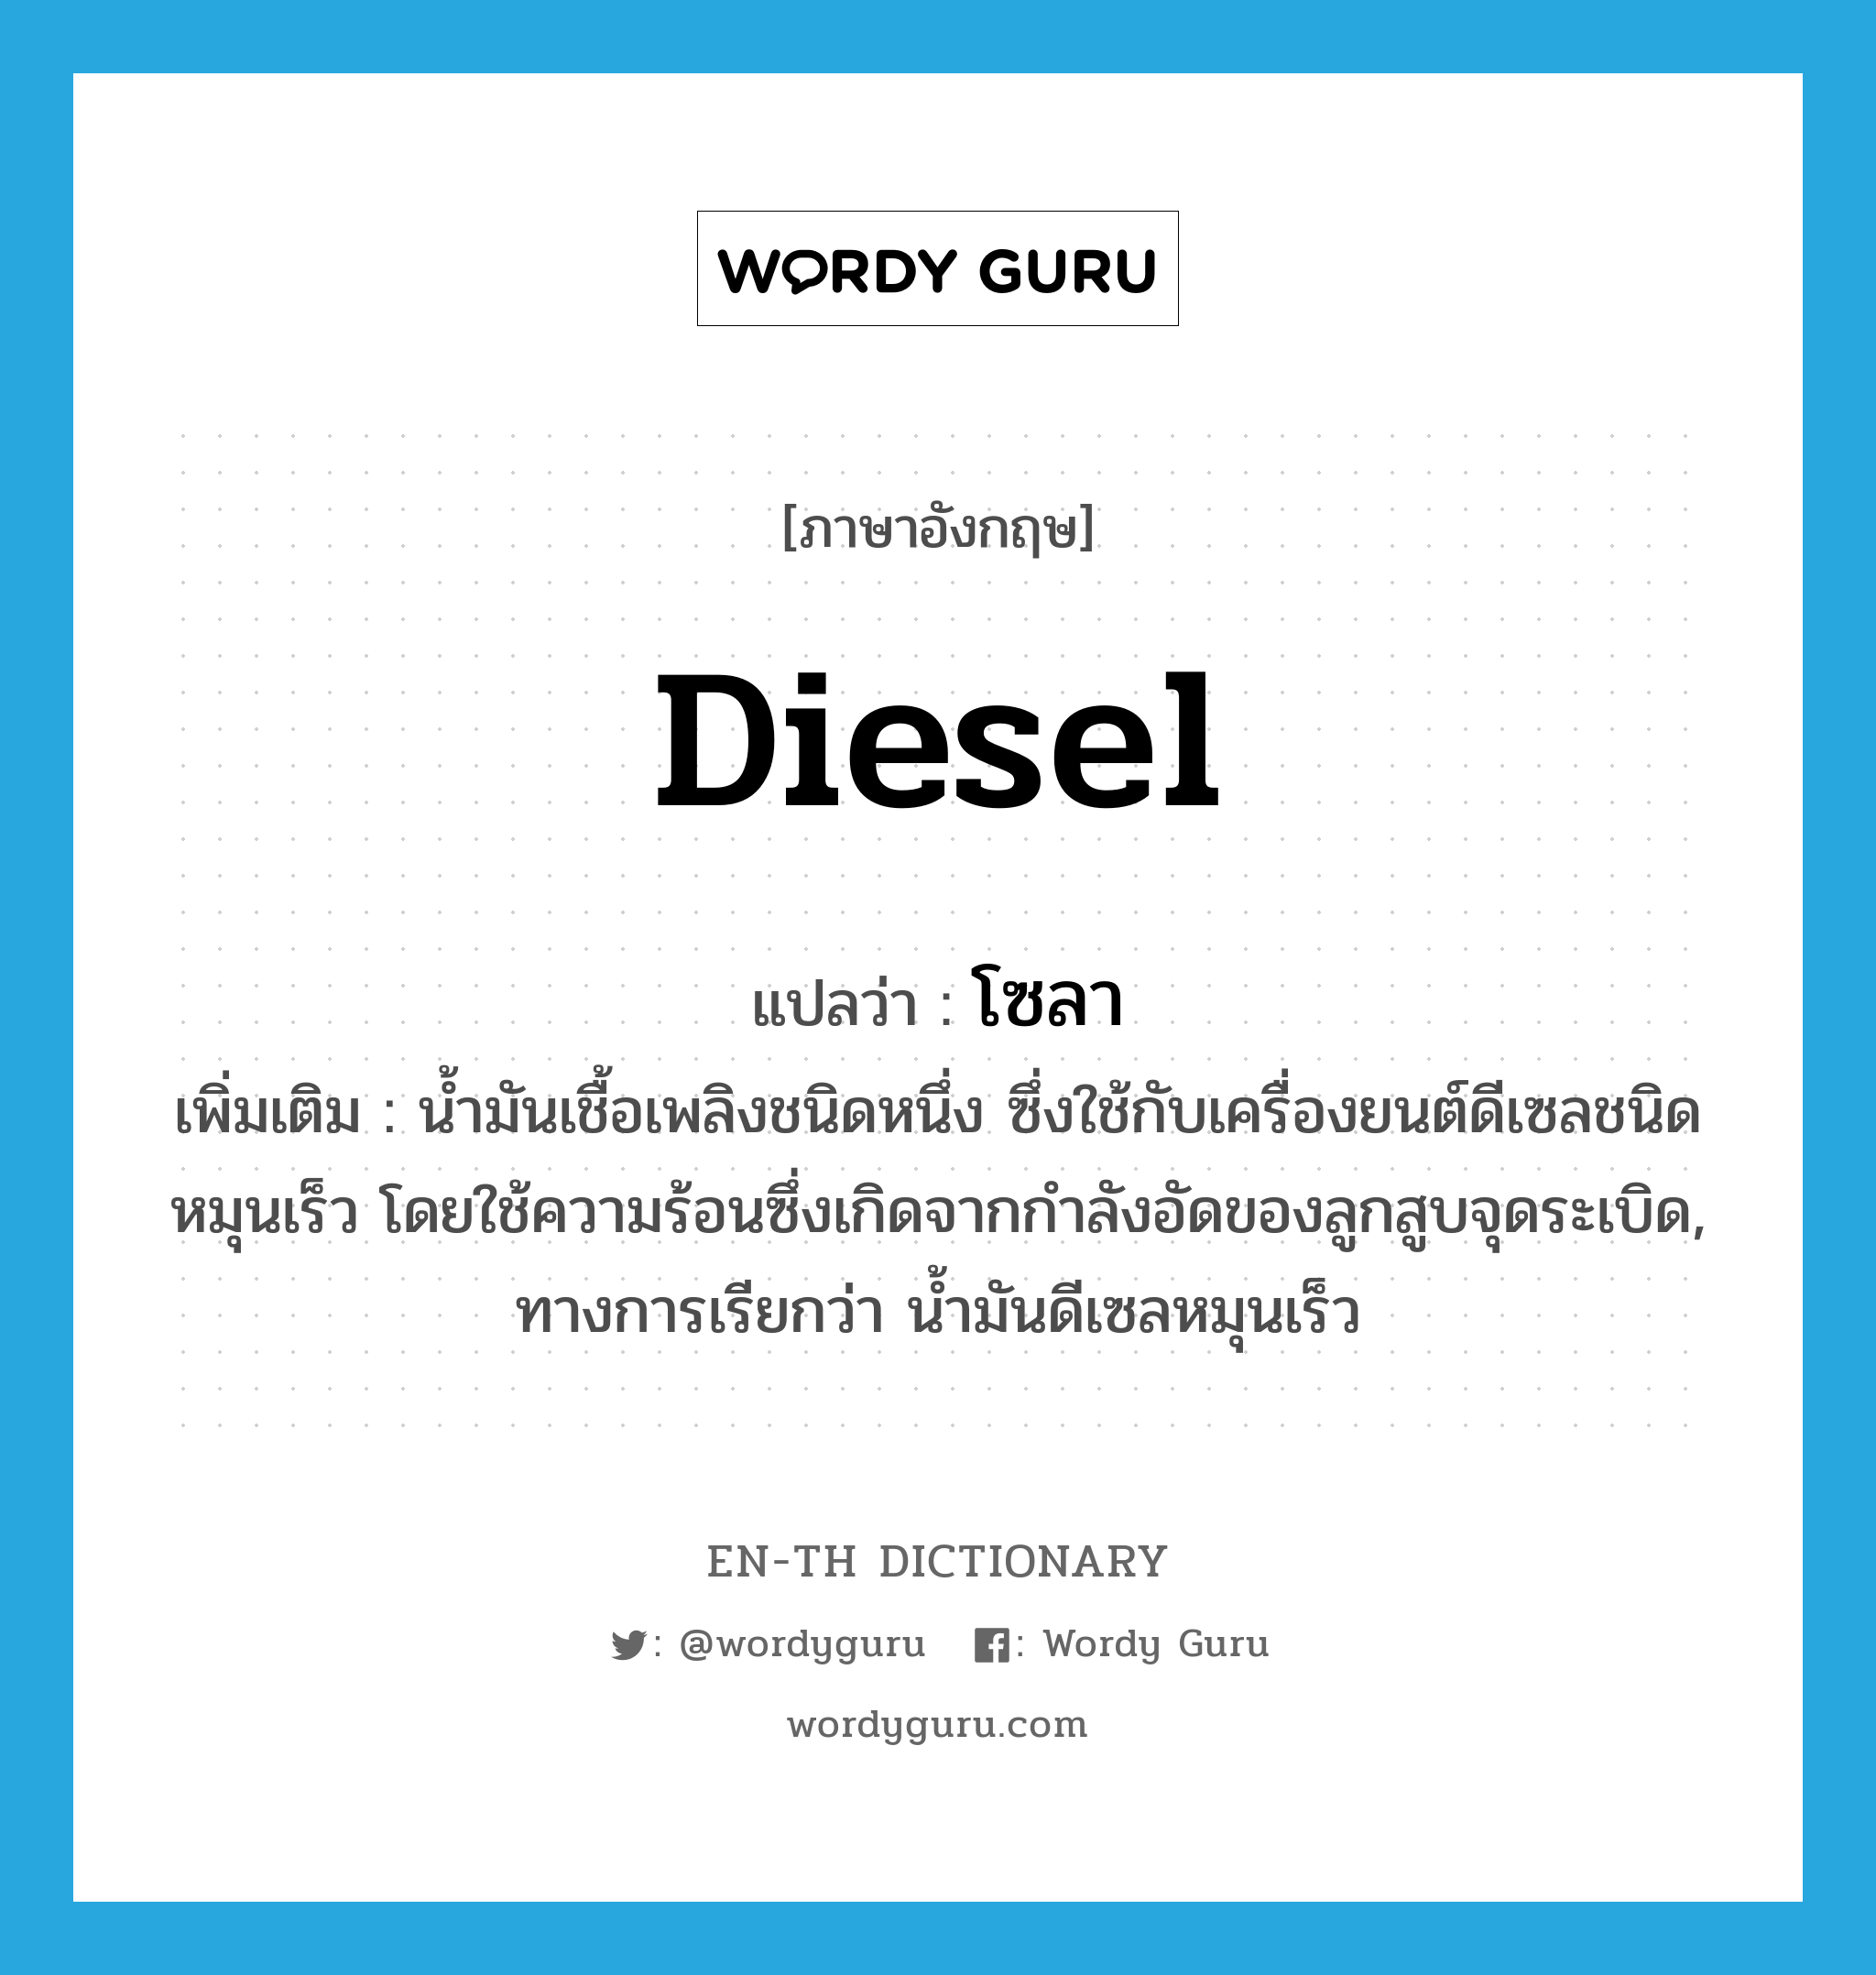 diesel แปลว่า?, คำศัพท์ภาษาอังกฤษ diesel แปลว่า โซลา ประเภท N เพิ่มเติม น้ำมันเชื้อเพลิงชนิดหนึ่ง ซึ่งใช้กับเครื่องยนต์ดีเซลชนิดหมุนเร็ว โดยใช้ความร้อนซึ่งเกิดจากกำลังอัดของลูกสูบจุดระเบิด, ทางการเรียกว่า น้ำมันดีเซลหมุนเร็ว หมวด N